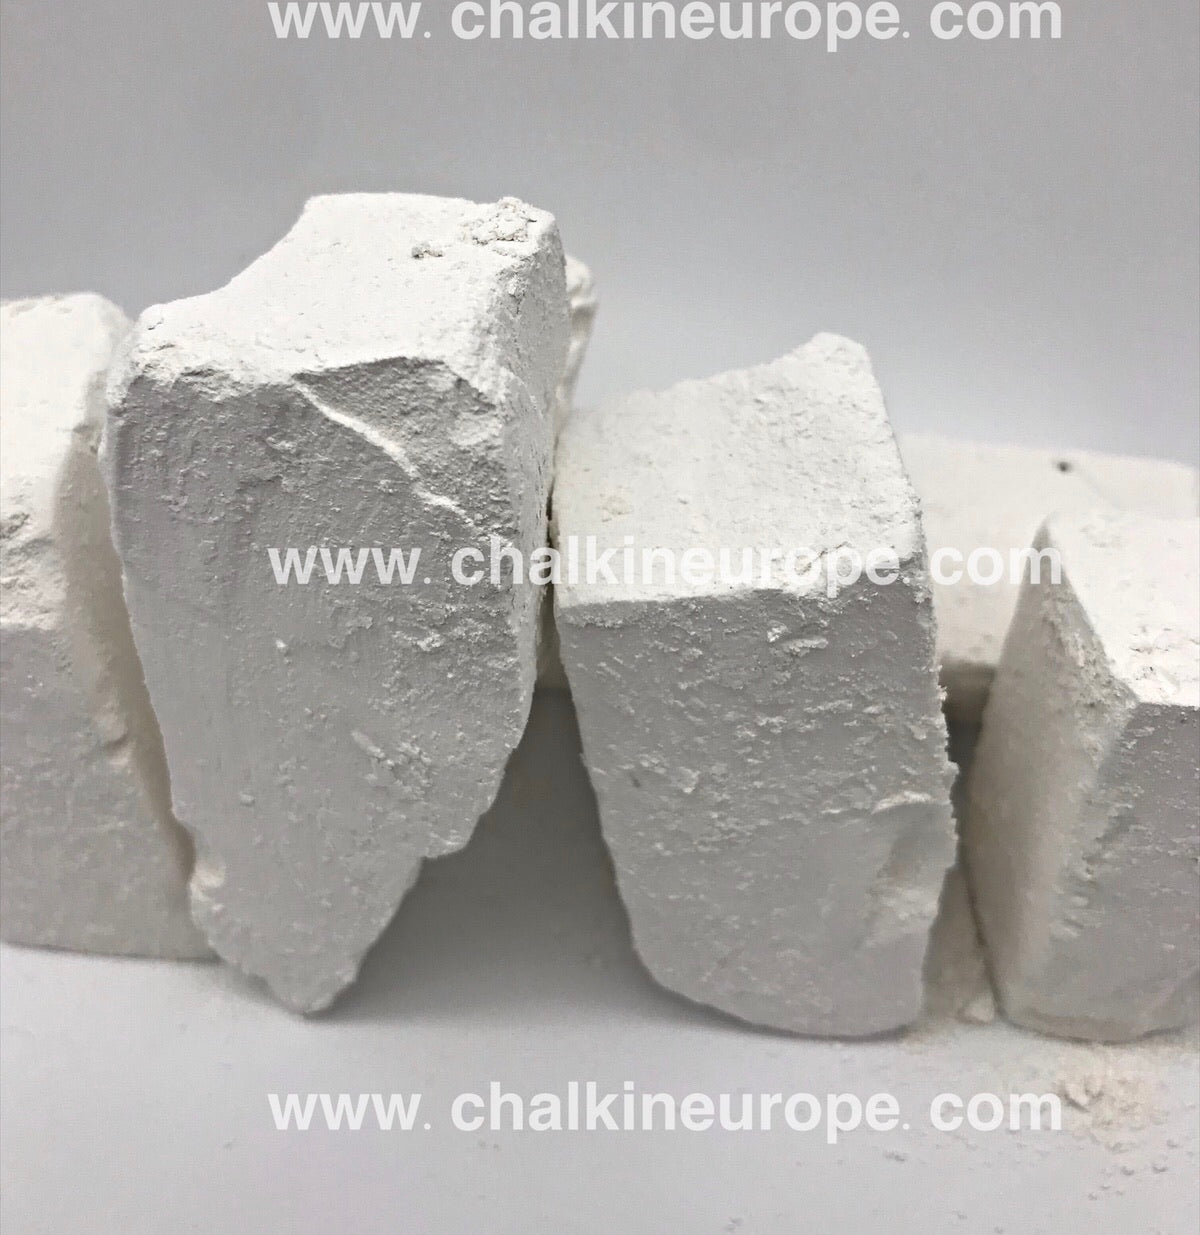 Chalk Blocks Edible Chalk